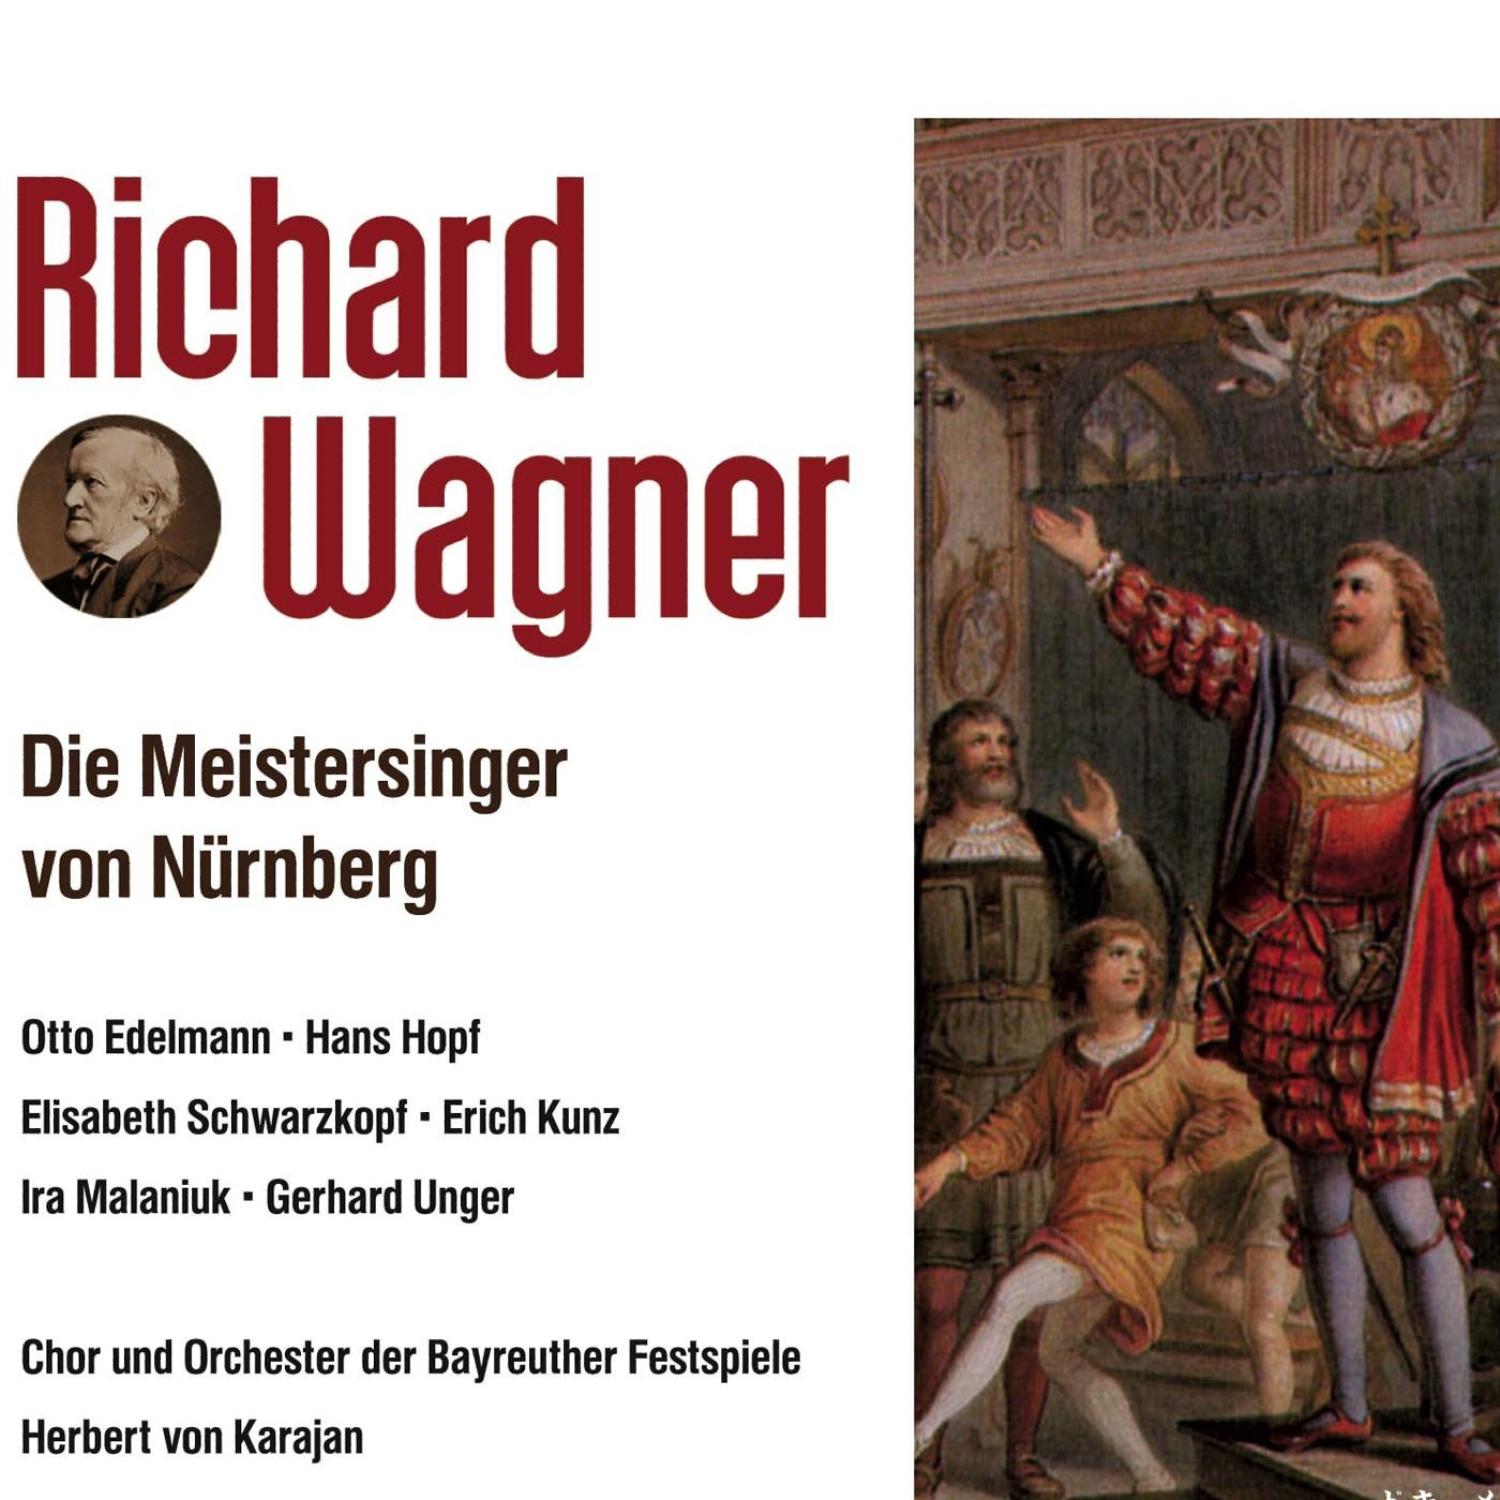 Die Meistersinger von Nürnberg-3 Aufzug Szene 5: Morgenlich leuchtend in rosigem Schein